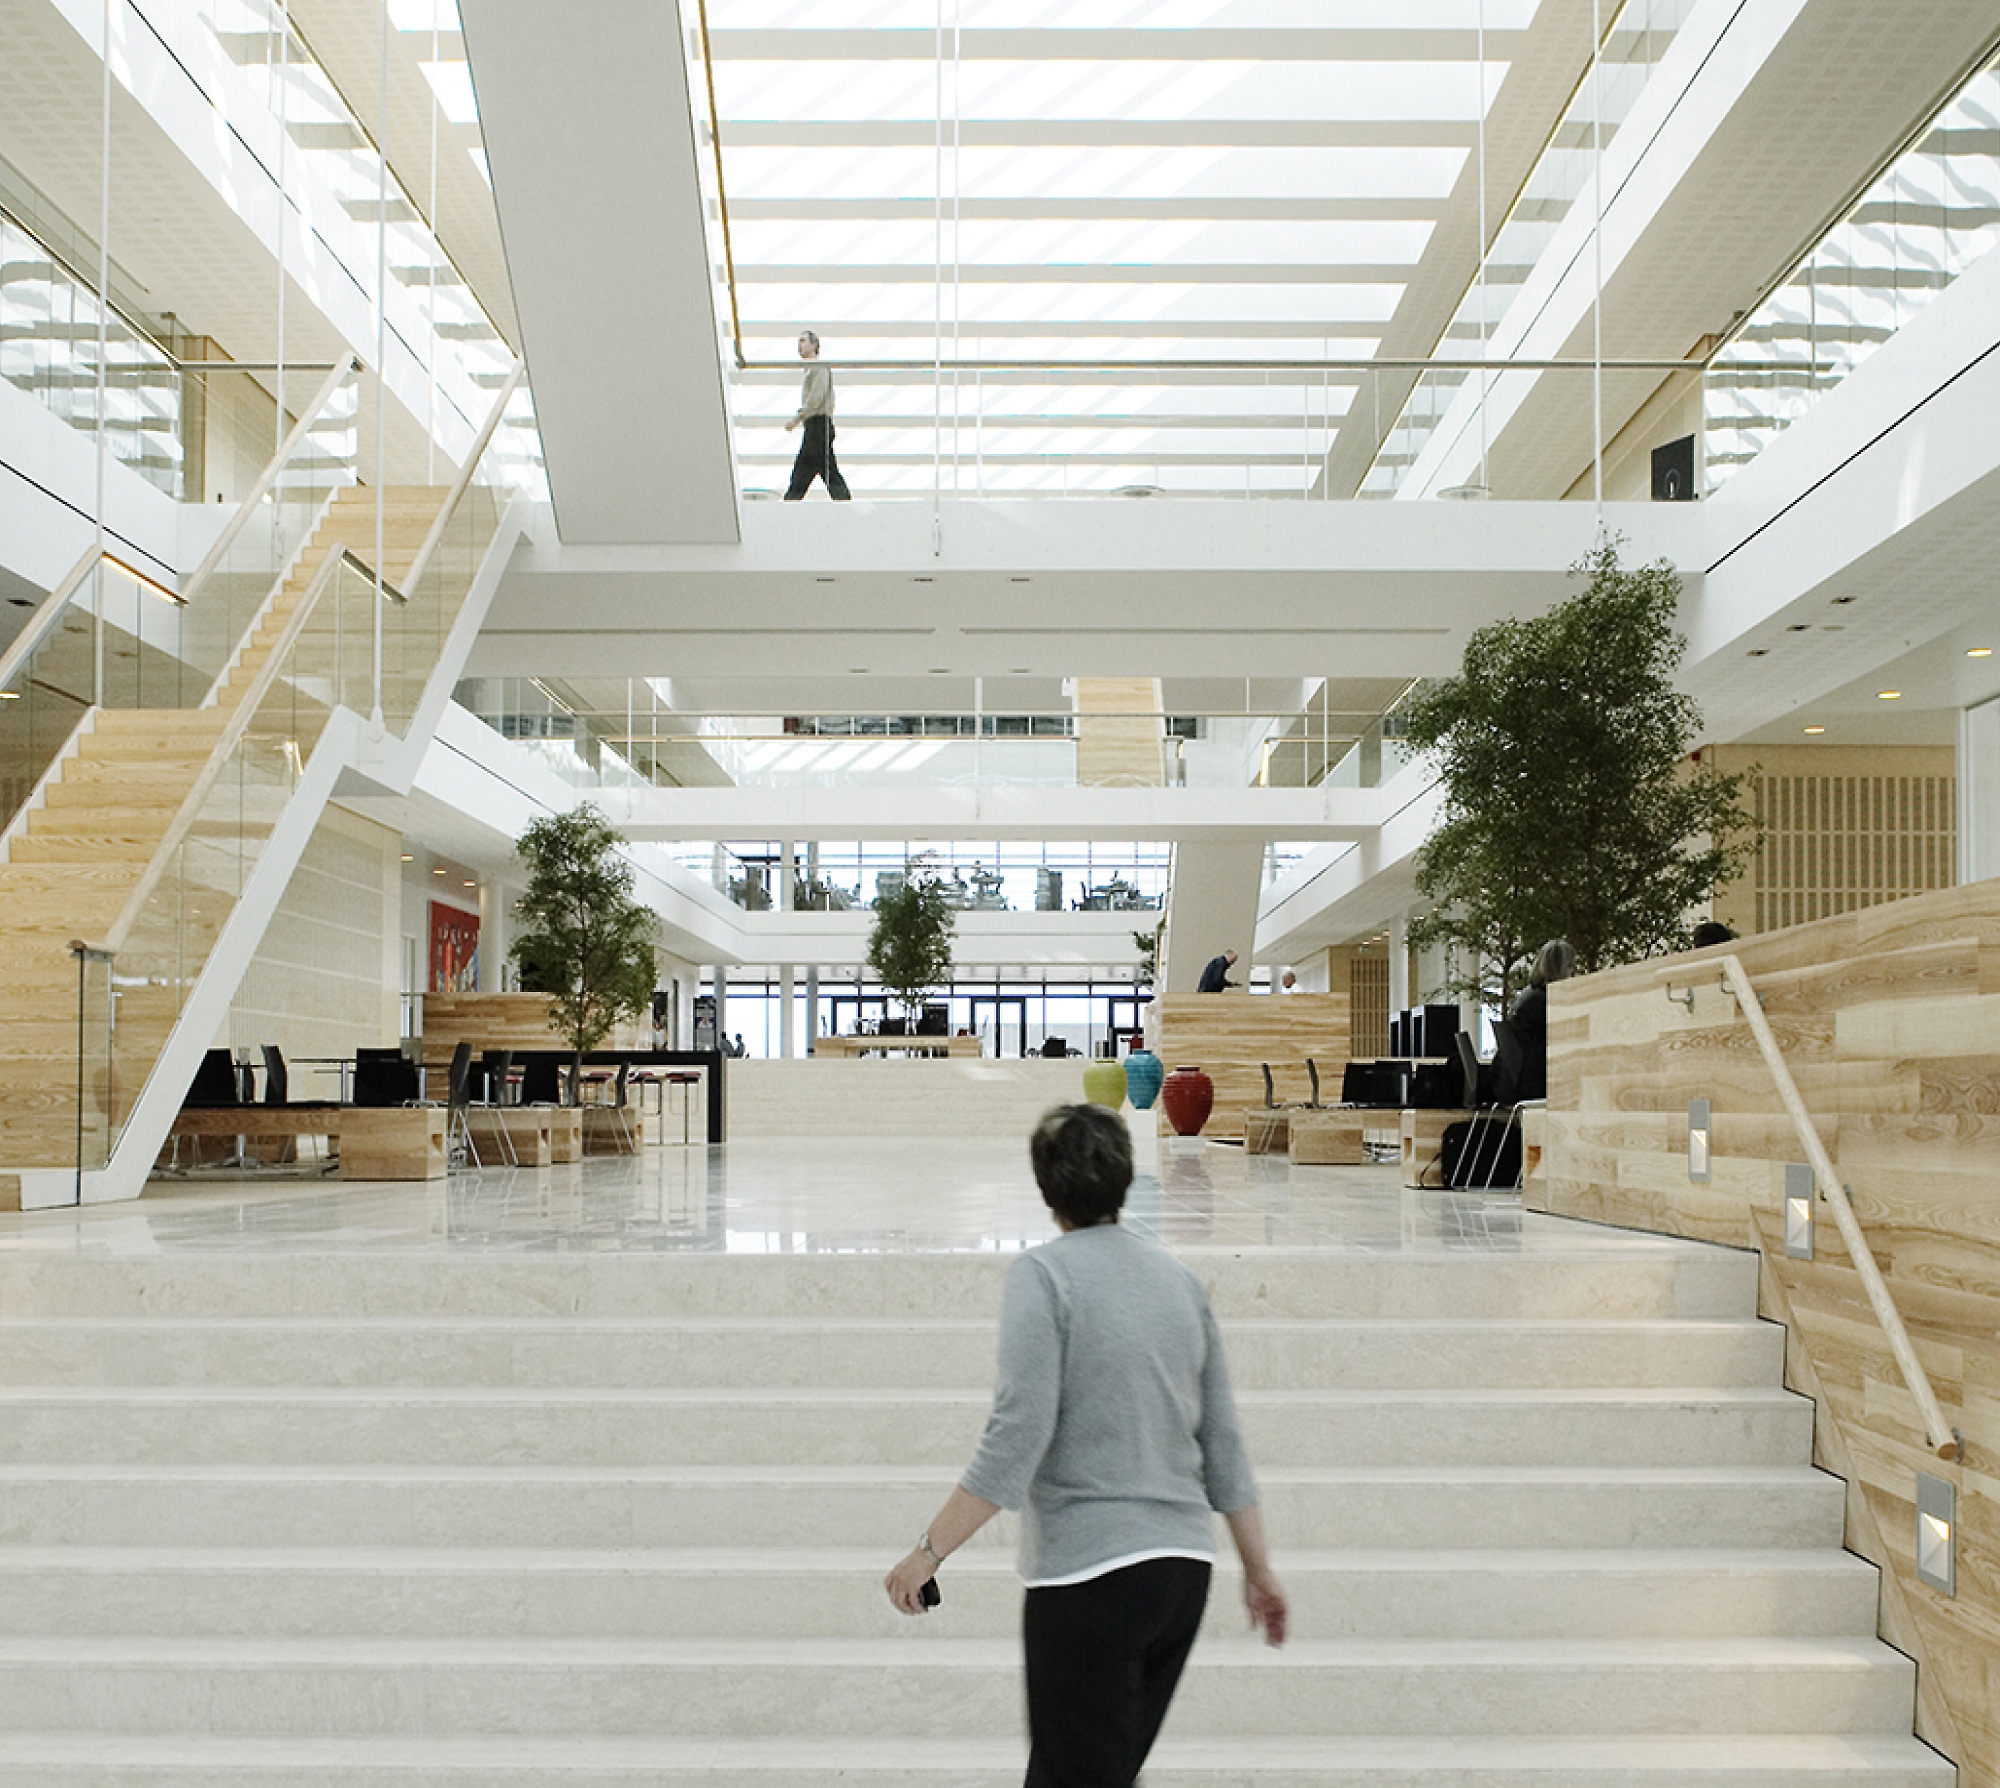 Moderni toimiston aula, jossa on suuria valkoisia portaita, puisia aksentteja ja ihmisiä kävelemässä ympäriinsä. kirkas ja ilmava tunnelma.